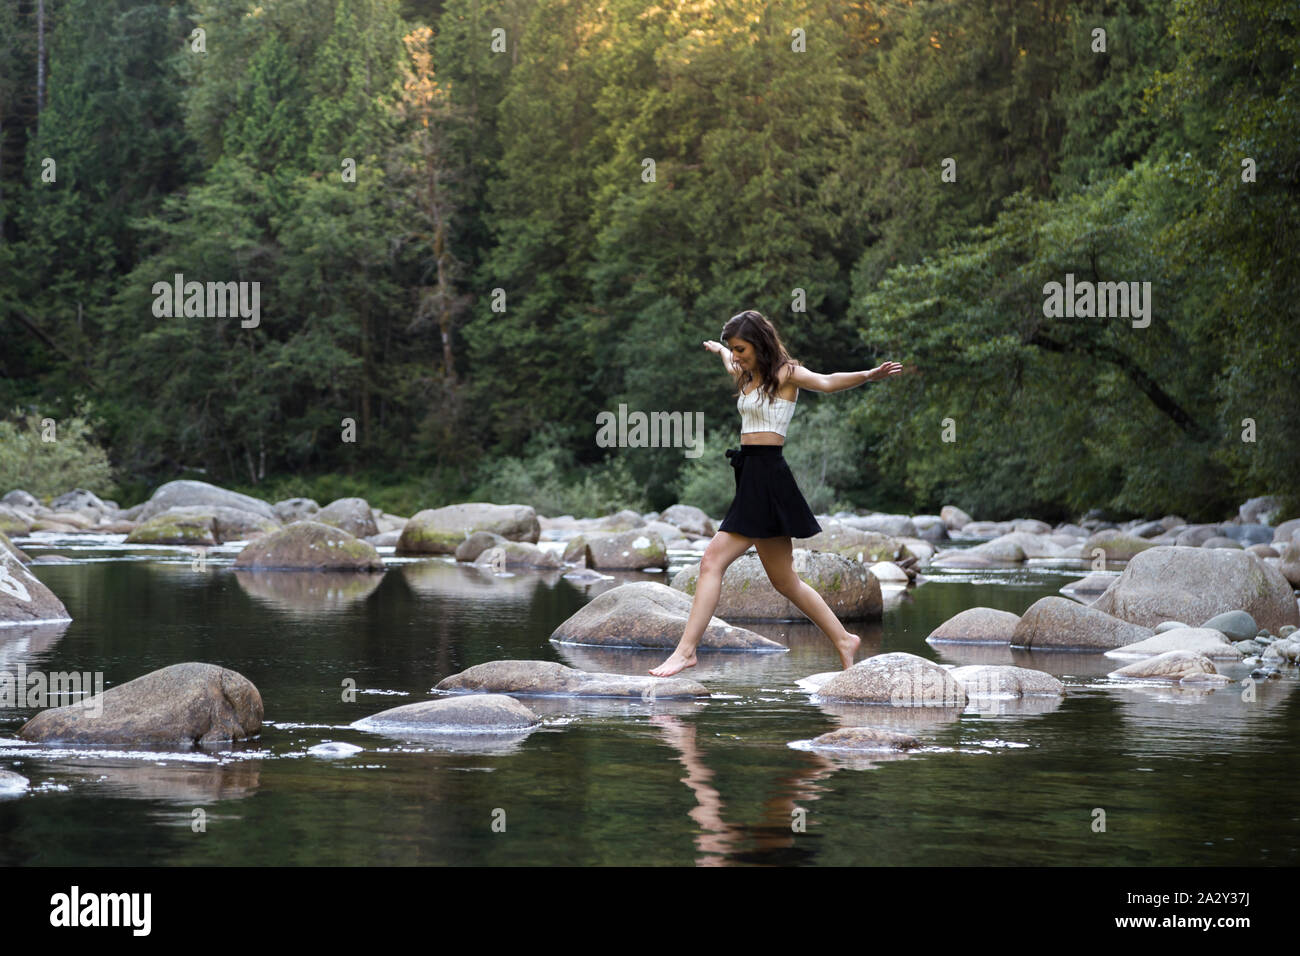 Jeune femme brune attrayante qui bondit sur des rochers au bord d'une rivière vierge dans une forêt à feuilles persistantes. Banque D'Images